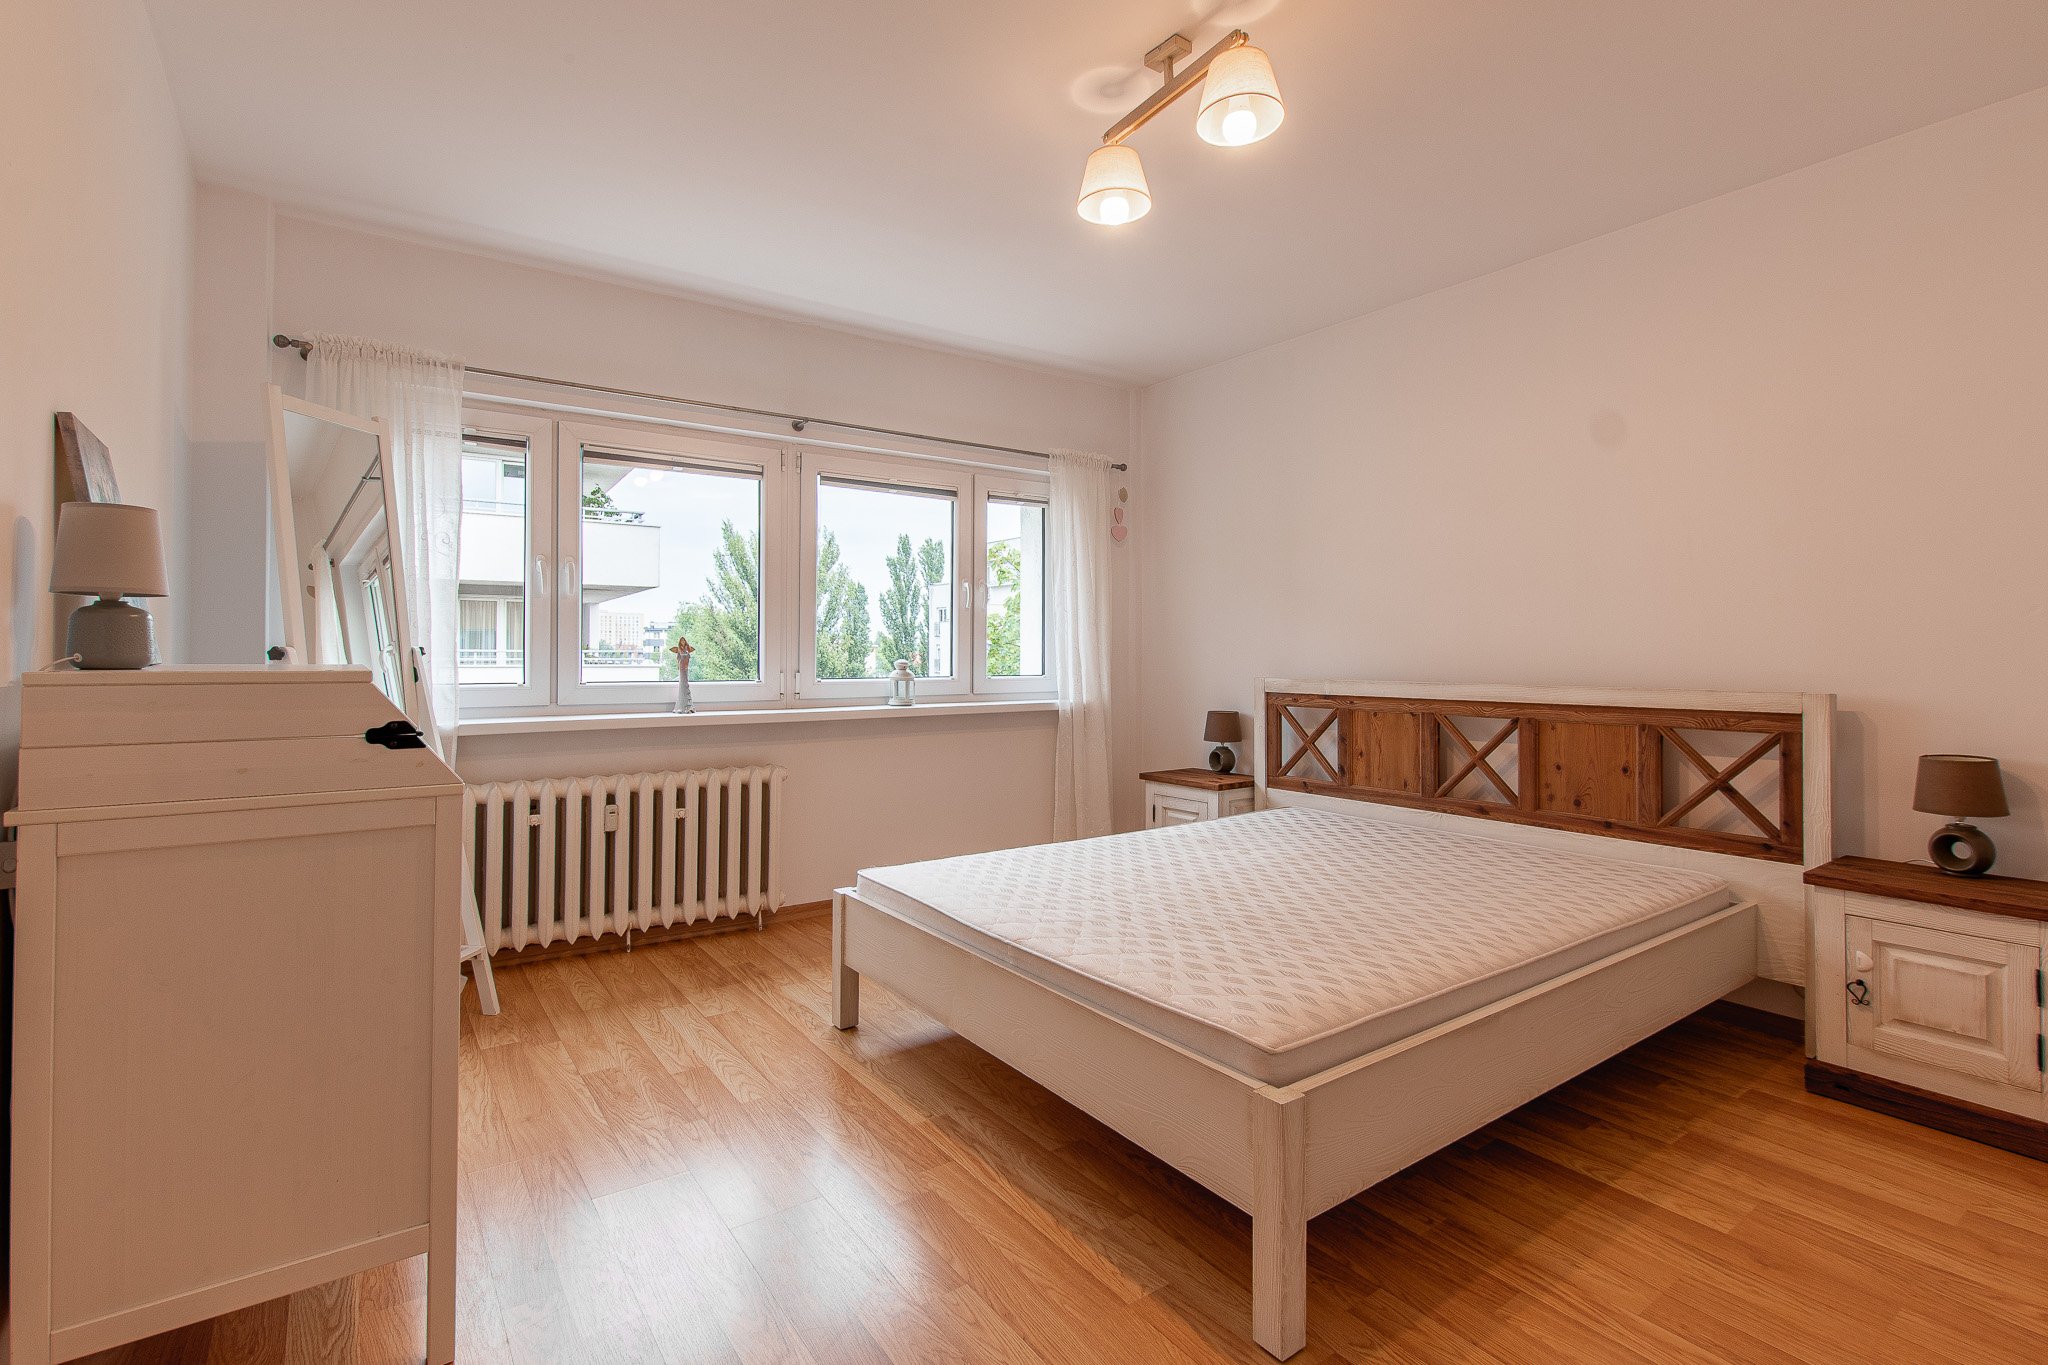 Na wynajem mieszkanie 2 pokoje, 43,1 m2, Grunwald, Brzask